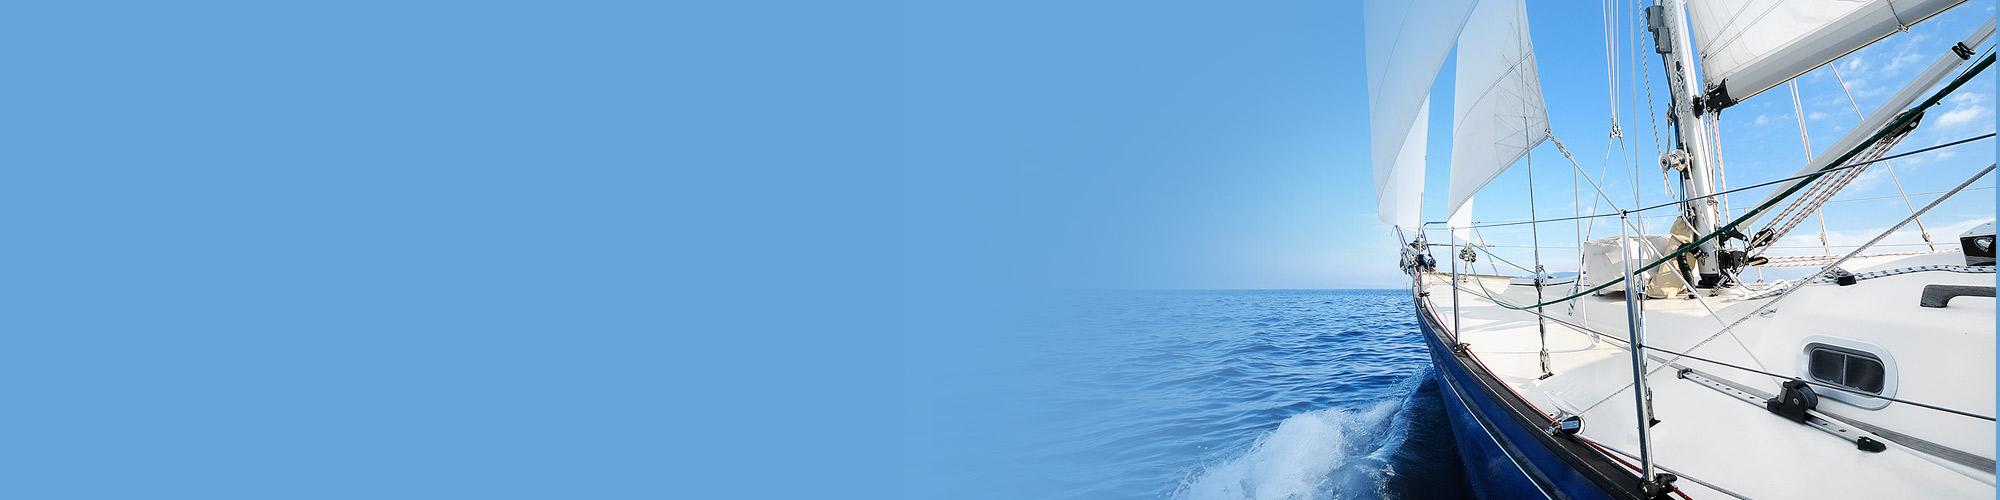 Boat sailing blue ocean